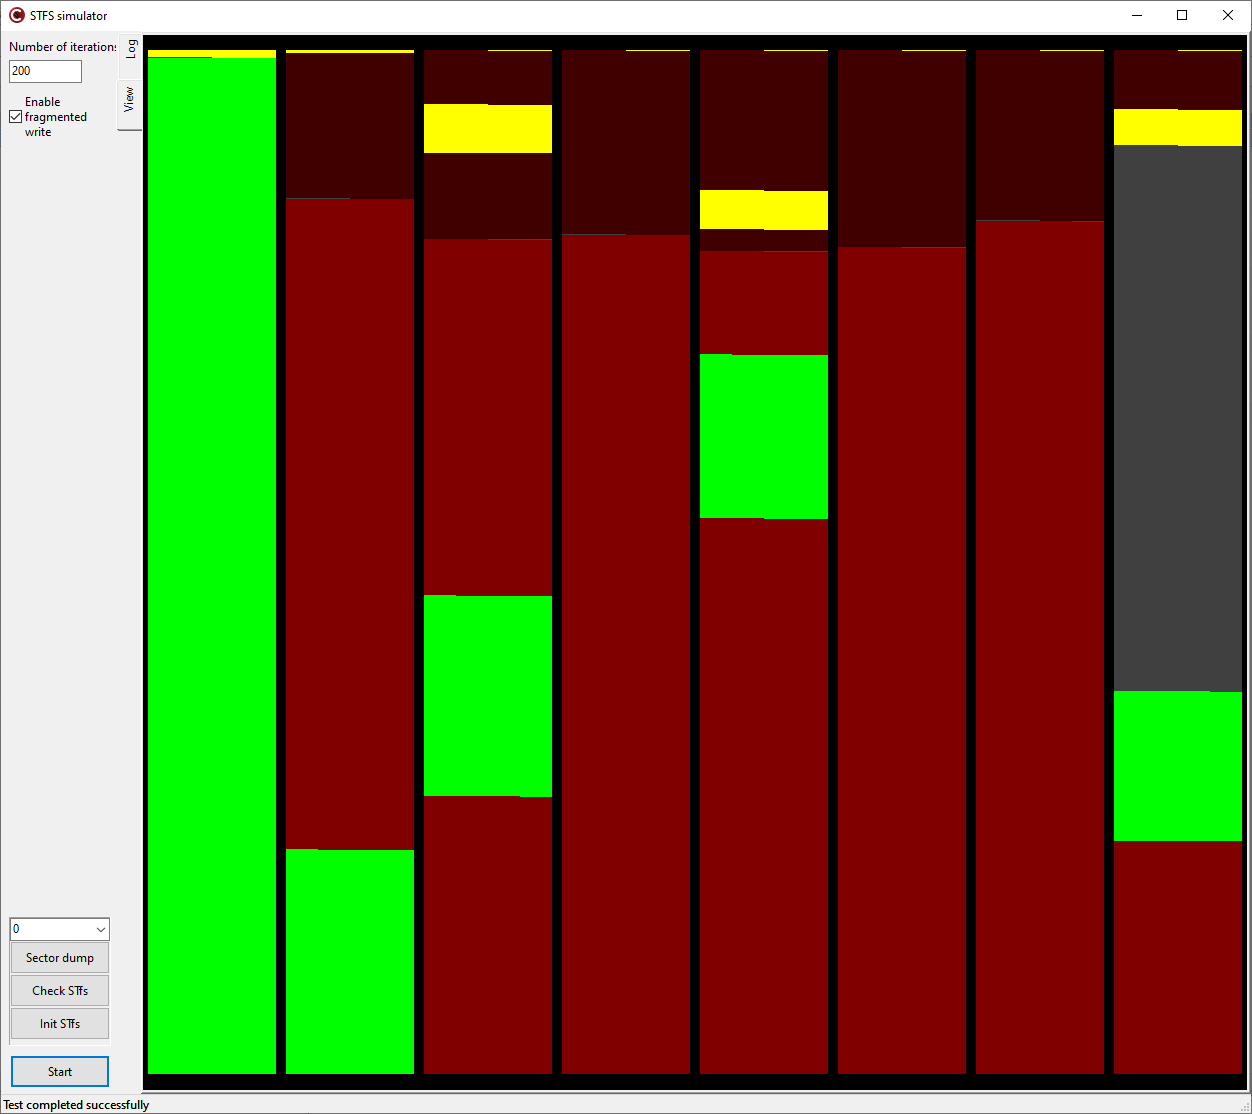 Внешний вид программы симулятора STfs
Каждый пиксел в столбце отображает состояние байта в секторе. Каждый столбец это отдельный сектор. Адреса растут слева направо и снизу вверх.

Зелёным цветом обозначаются блоки данных актуальных файлов, желтым обозначаются дескрипторы актуальных файлов. Красным и тёмно-красным обозначаются блоки уделенных файлов и их дескрипторов.
Серый цвет обозначает чистые области Flash, куда еще ничего не записывалось после последнего стирания сектора.  